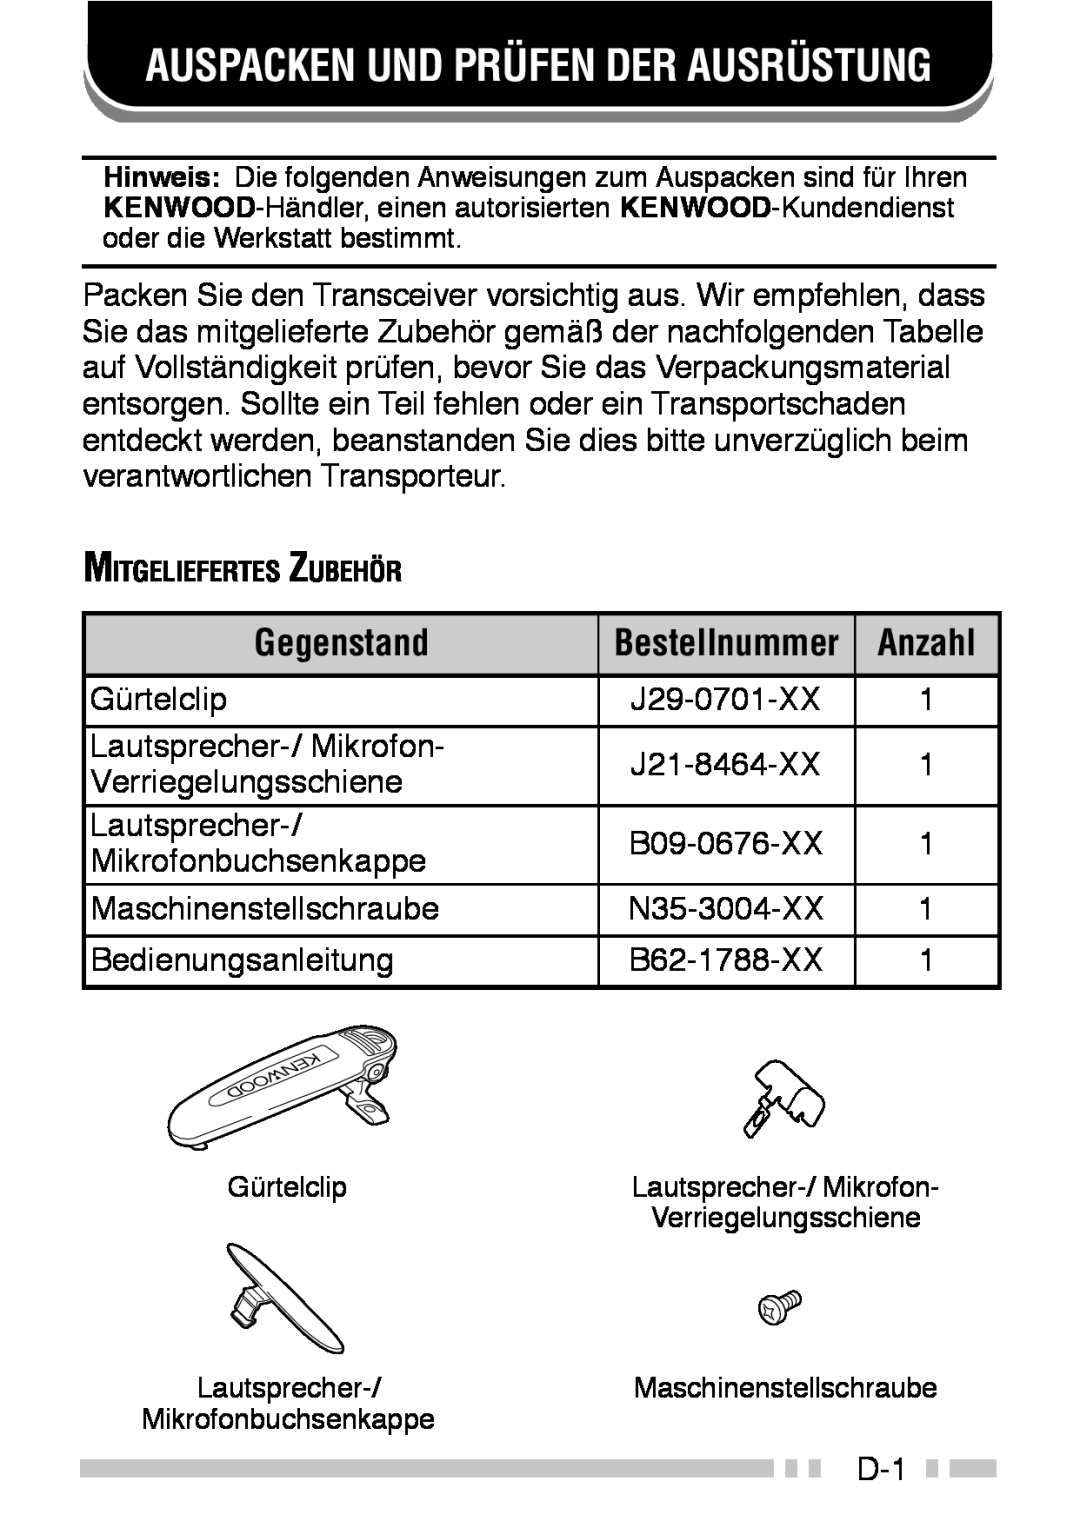 Kenwood TK-3160 instruction manual Auspacken Und Prüfen Der Ausrüstung, Gegenstand, Anzahl 